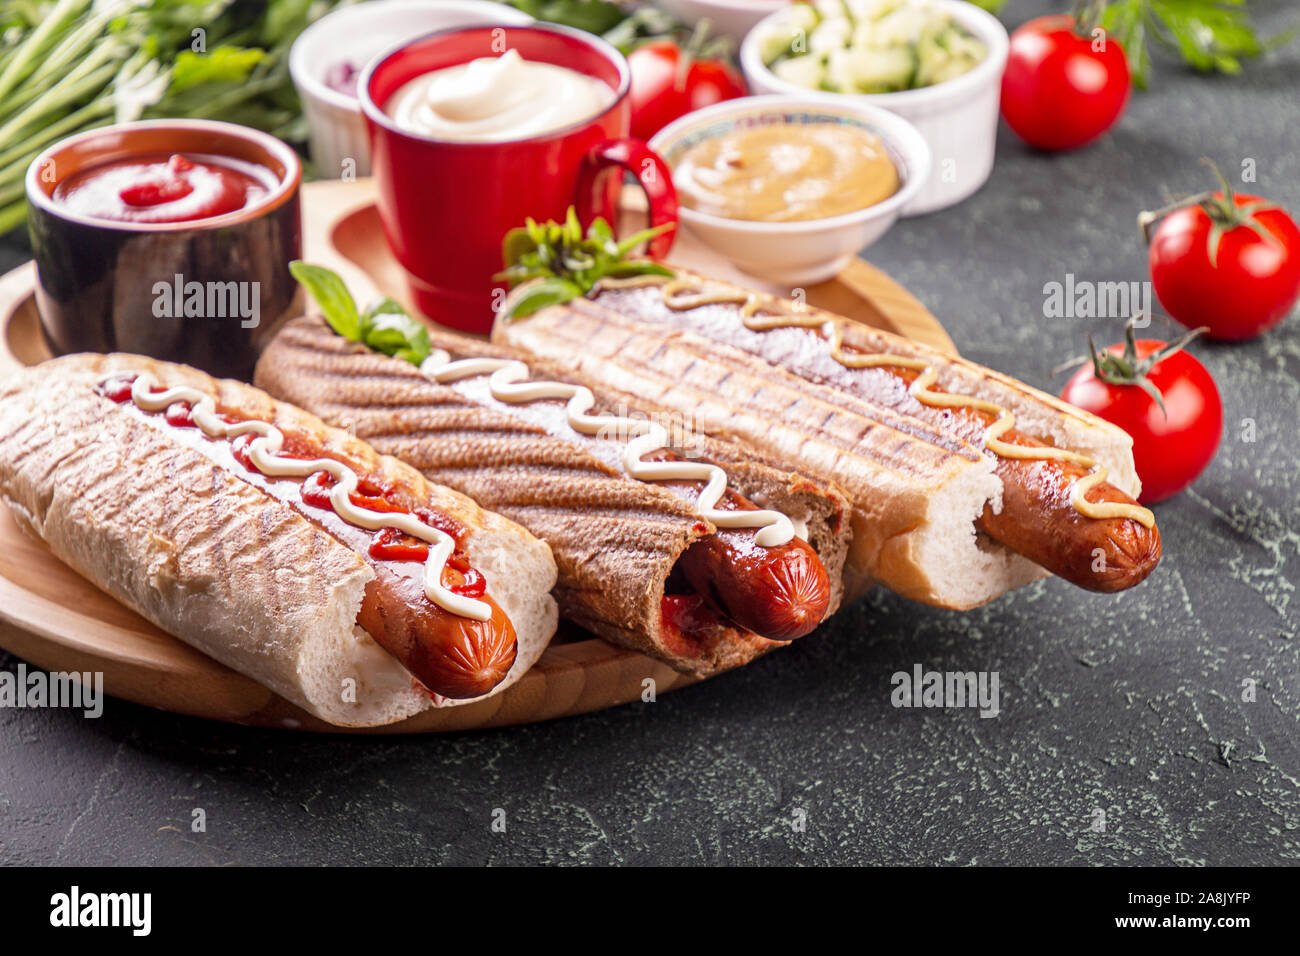 Hot Dogs, Gemüse und sauses auf schwarzem Hintergrund. Fast food, amerikanische tradditional Essen Stockfoto